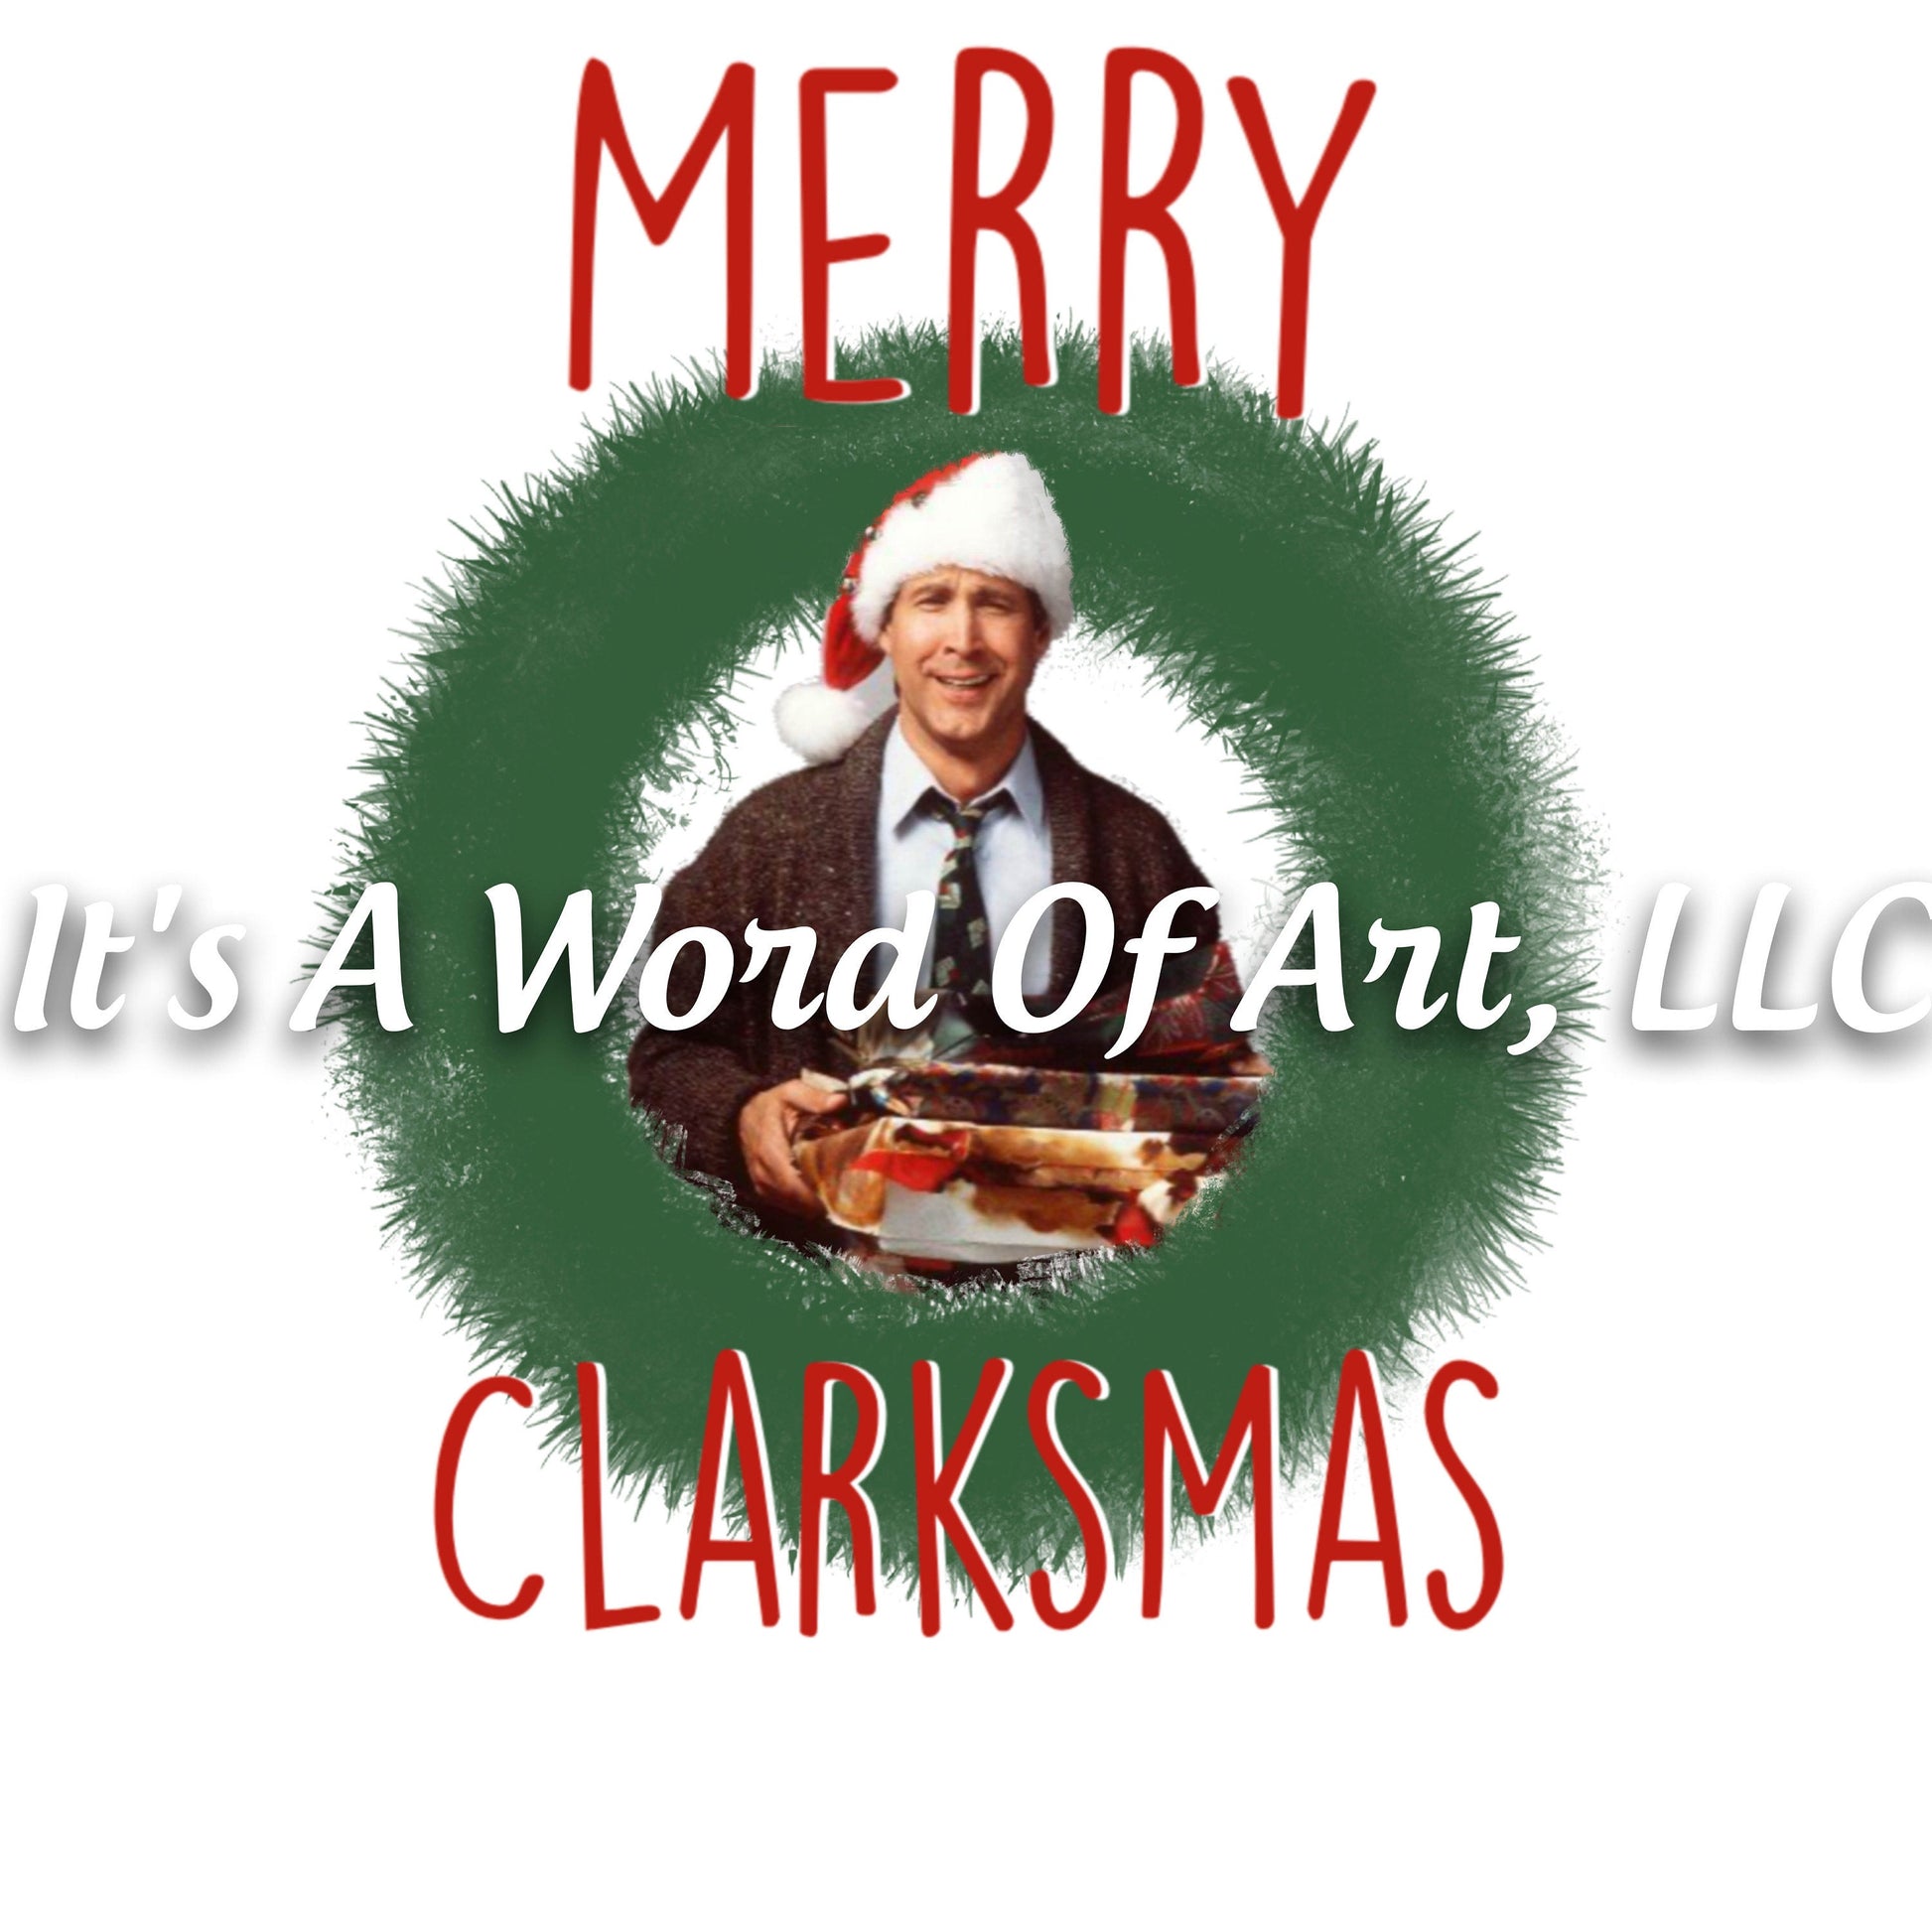 Christmas 284 - Merry Clarksmas - Sublimation Transfer Set/Ready To Press Sublimation Transfer/Sublimation Transfer